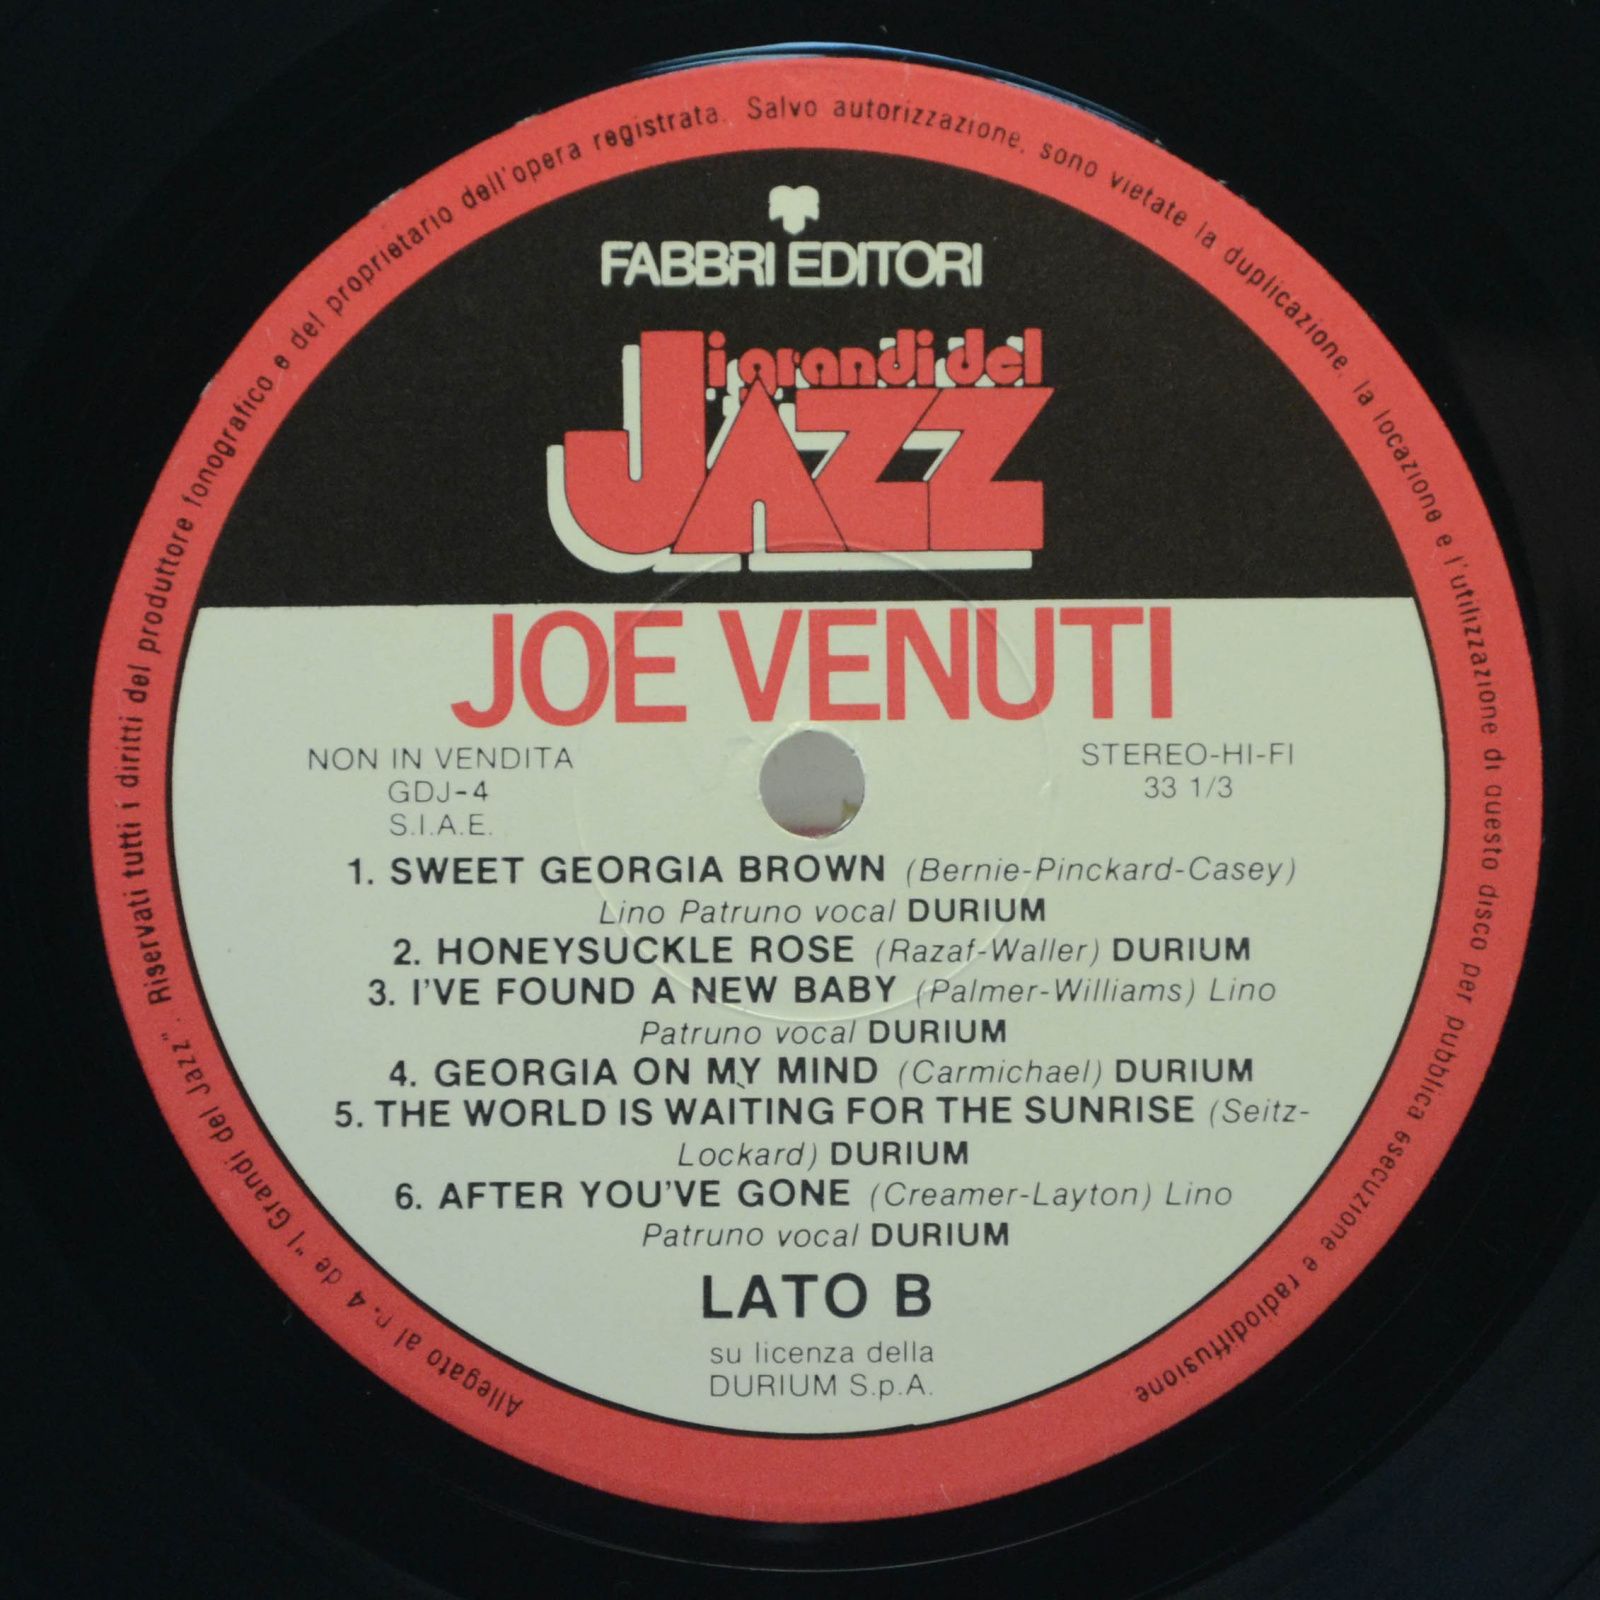 Joe Venuti — Joe Venuti, 1981